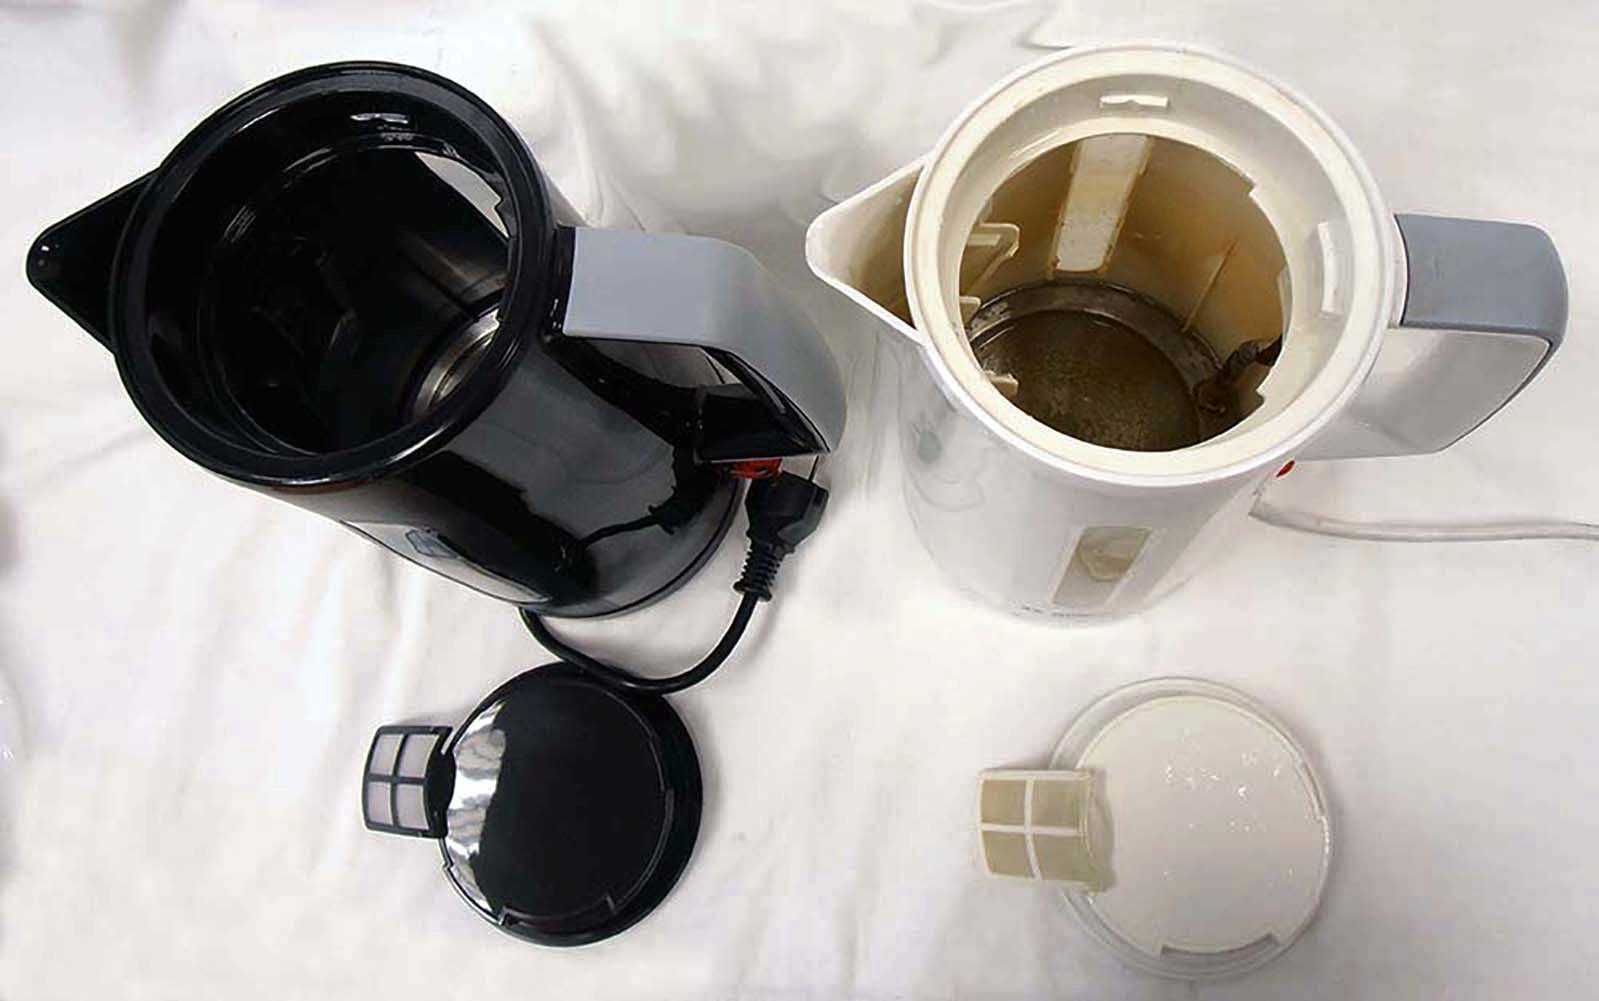 Чем и как очистить чайник от накипи внутри эффективно и быстро в домашних условиях – уксус, лимонка и магазинные средства от накипи за 12 рублей